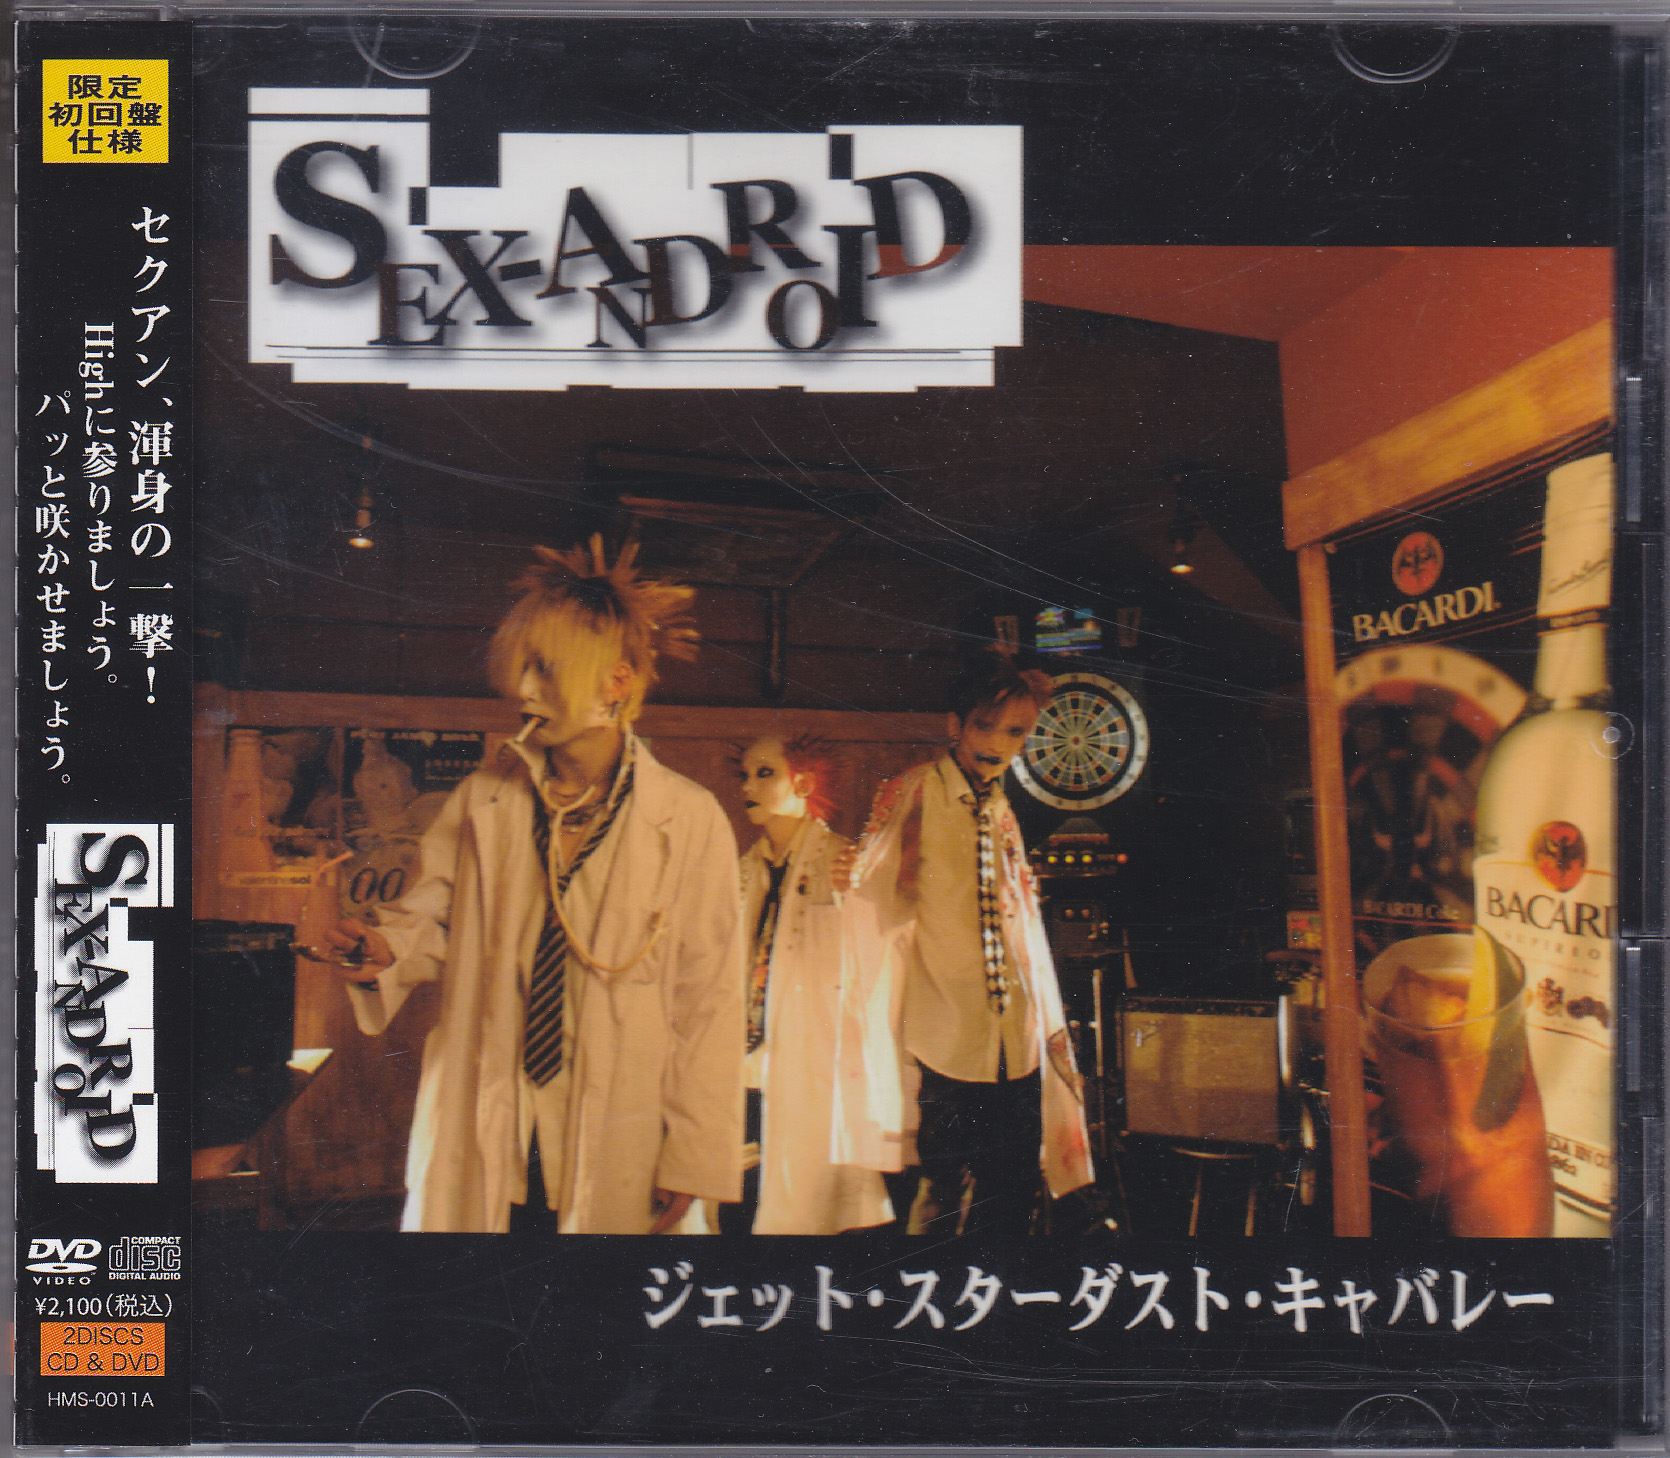 SEX-ANDROID ( セックスアンドロイド )  の CD ジェット・スターダスト・キャバレー DVD付初回限定盤